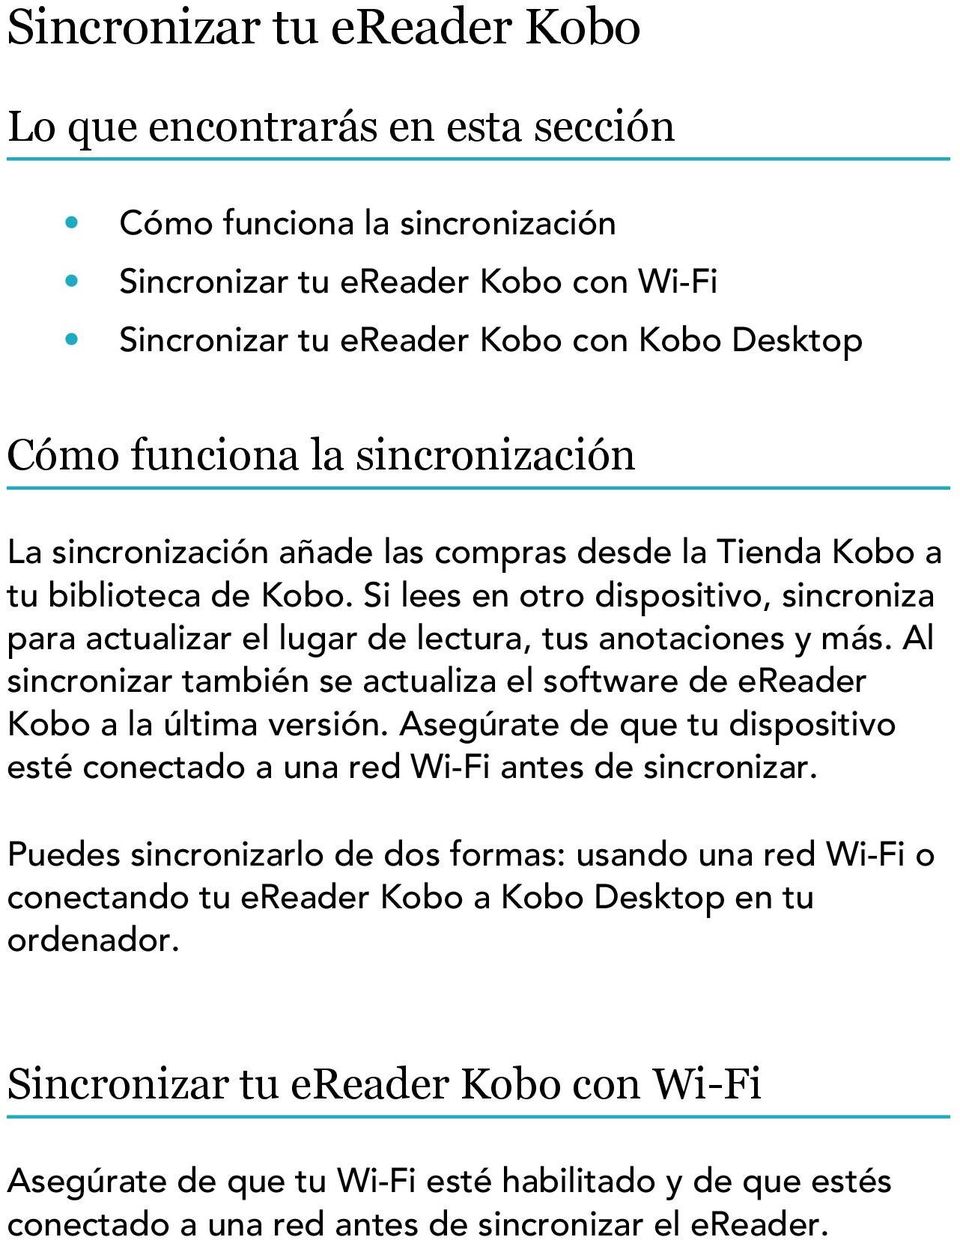 Al sincronizar también se actualiza el software de ereader Kobo a la última versión. Asegúrate de que tu dispositivo esté conectado a una red Wi-Fi antes de sincronizar.